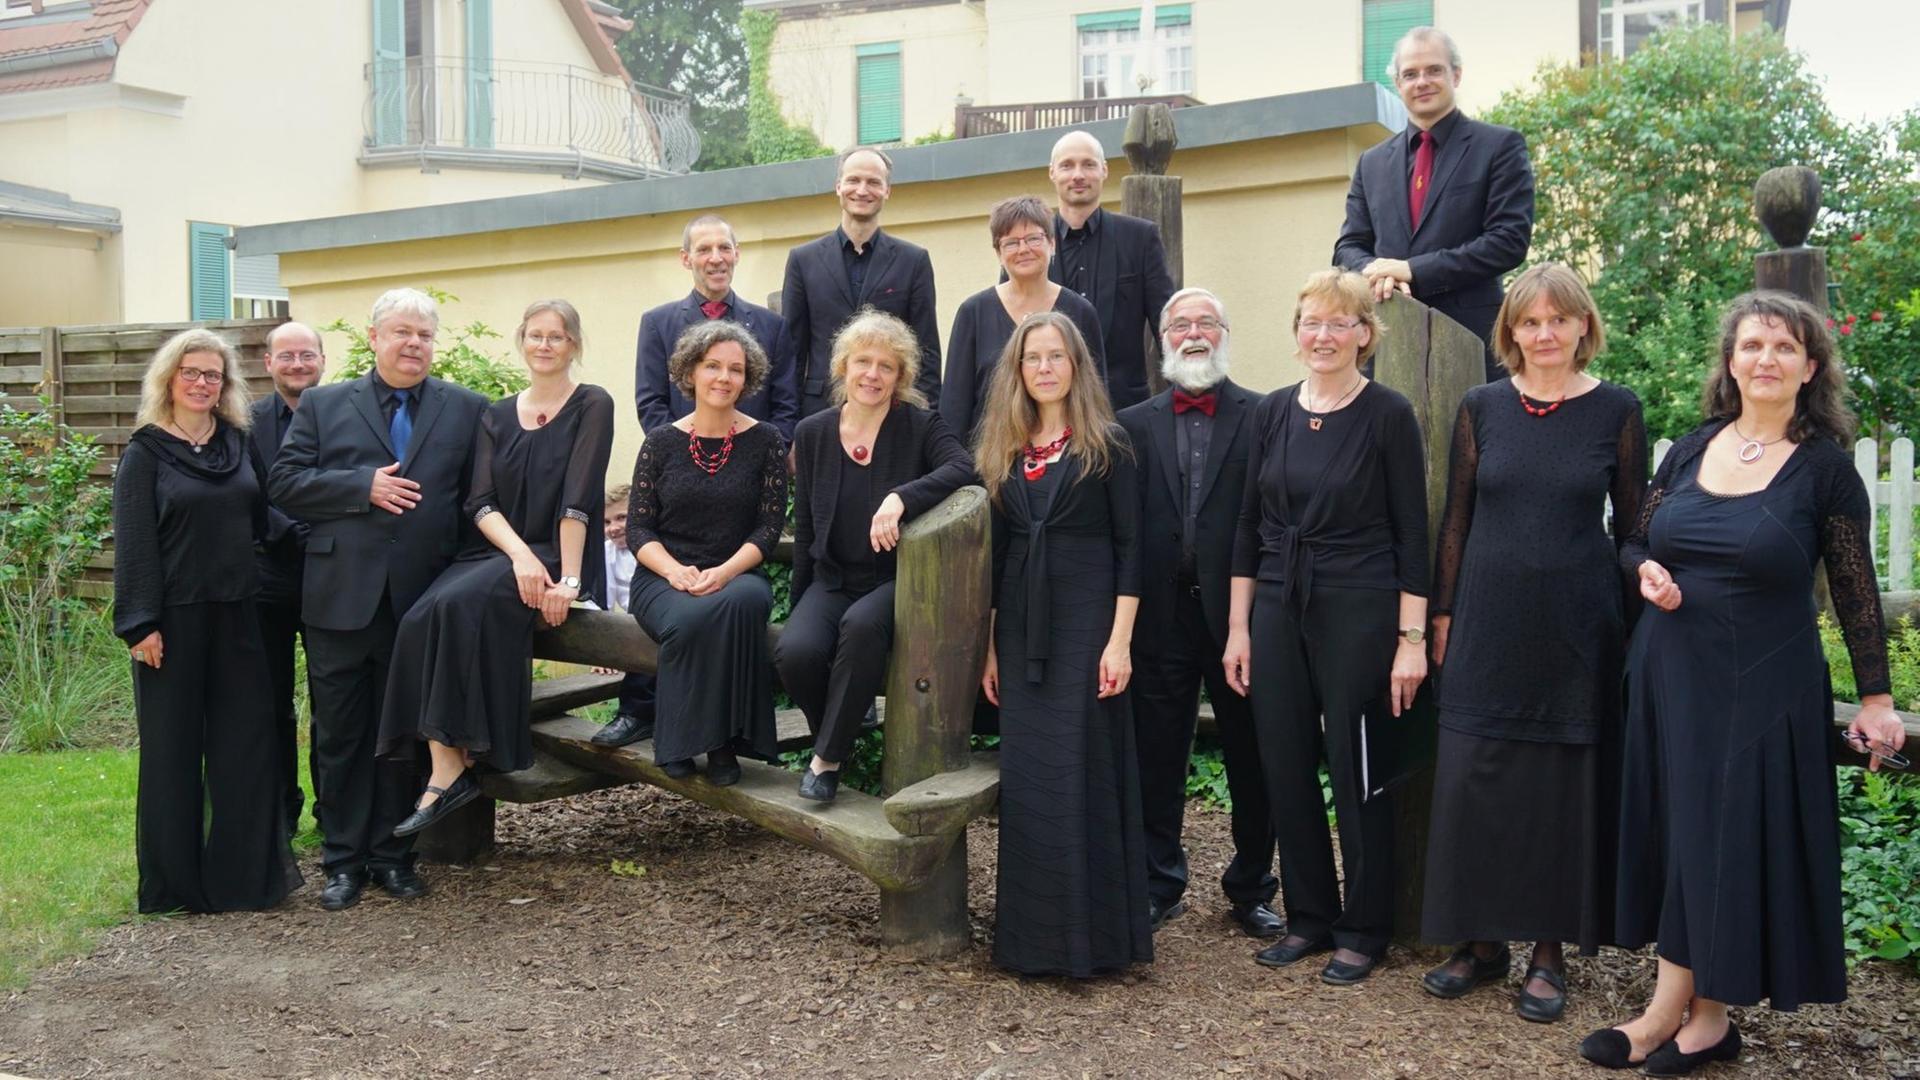 Ein Gruppenbild des Chores in schwarzer, festlicher Kleidung.